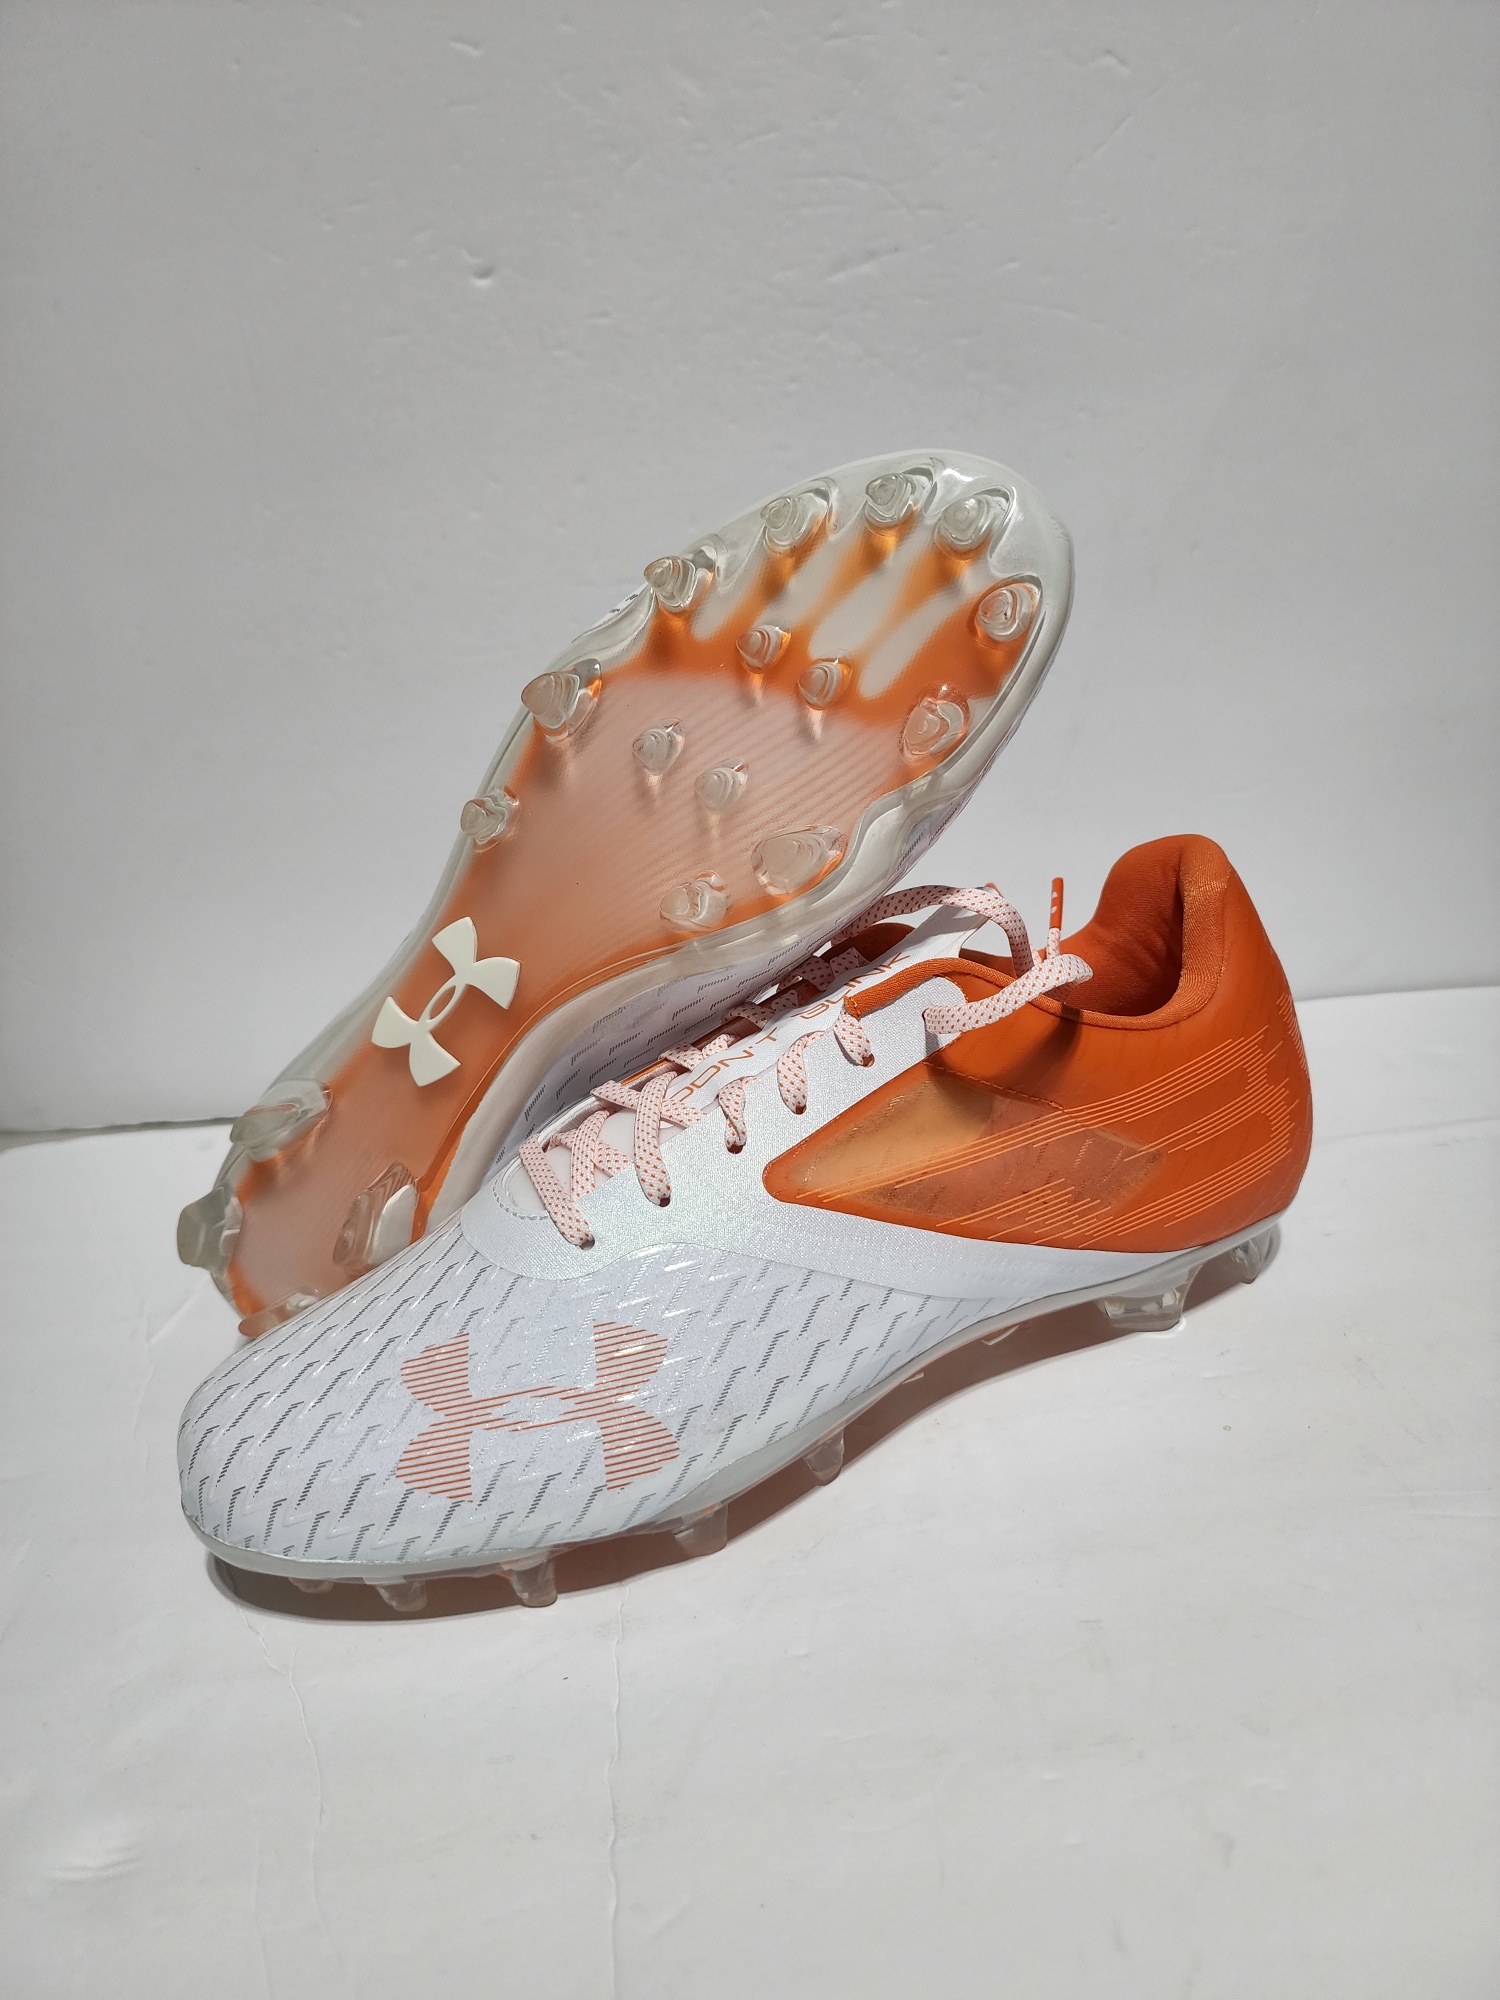 Men Under Armour UA Blur Lux MC Football Cleats Orange Shoes 3023190-801 Sz 10.5